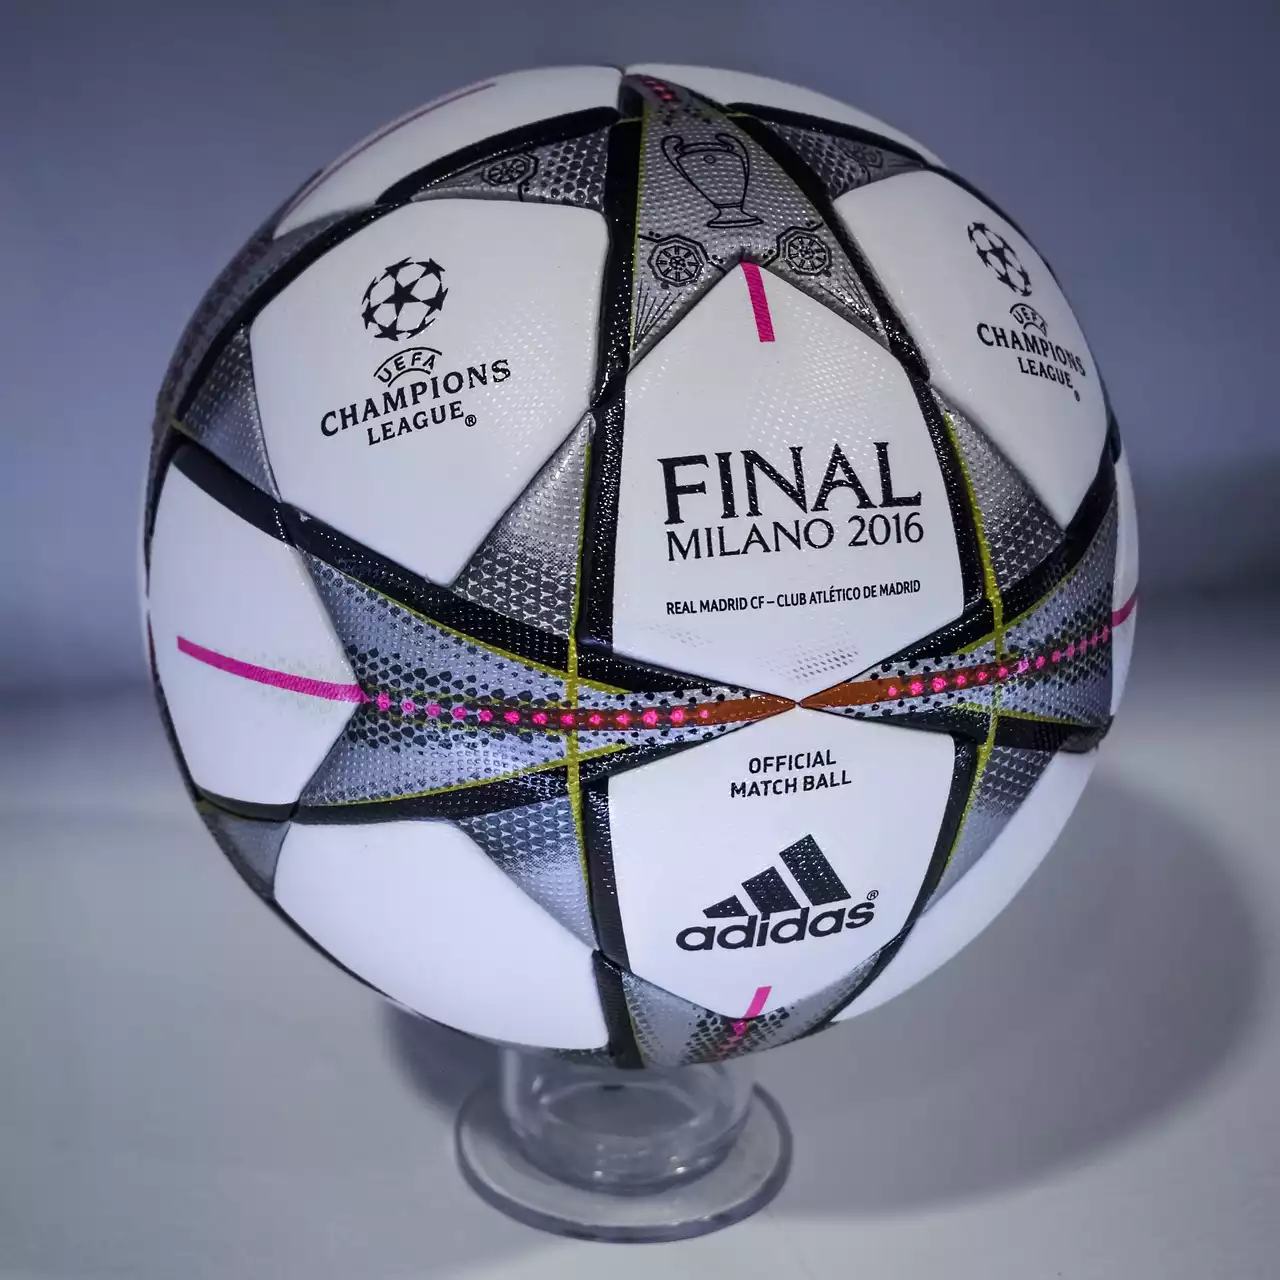 Una panoramica della competizione della UEFA Champions League